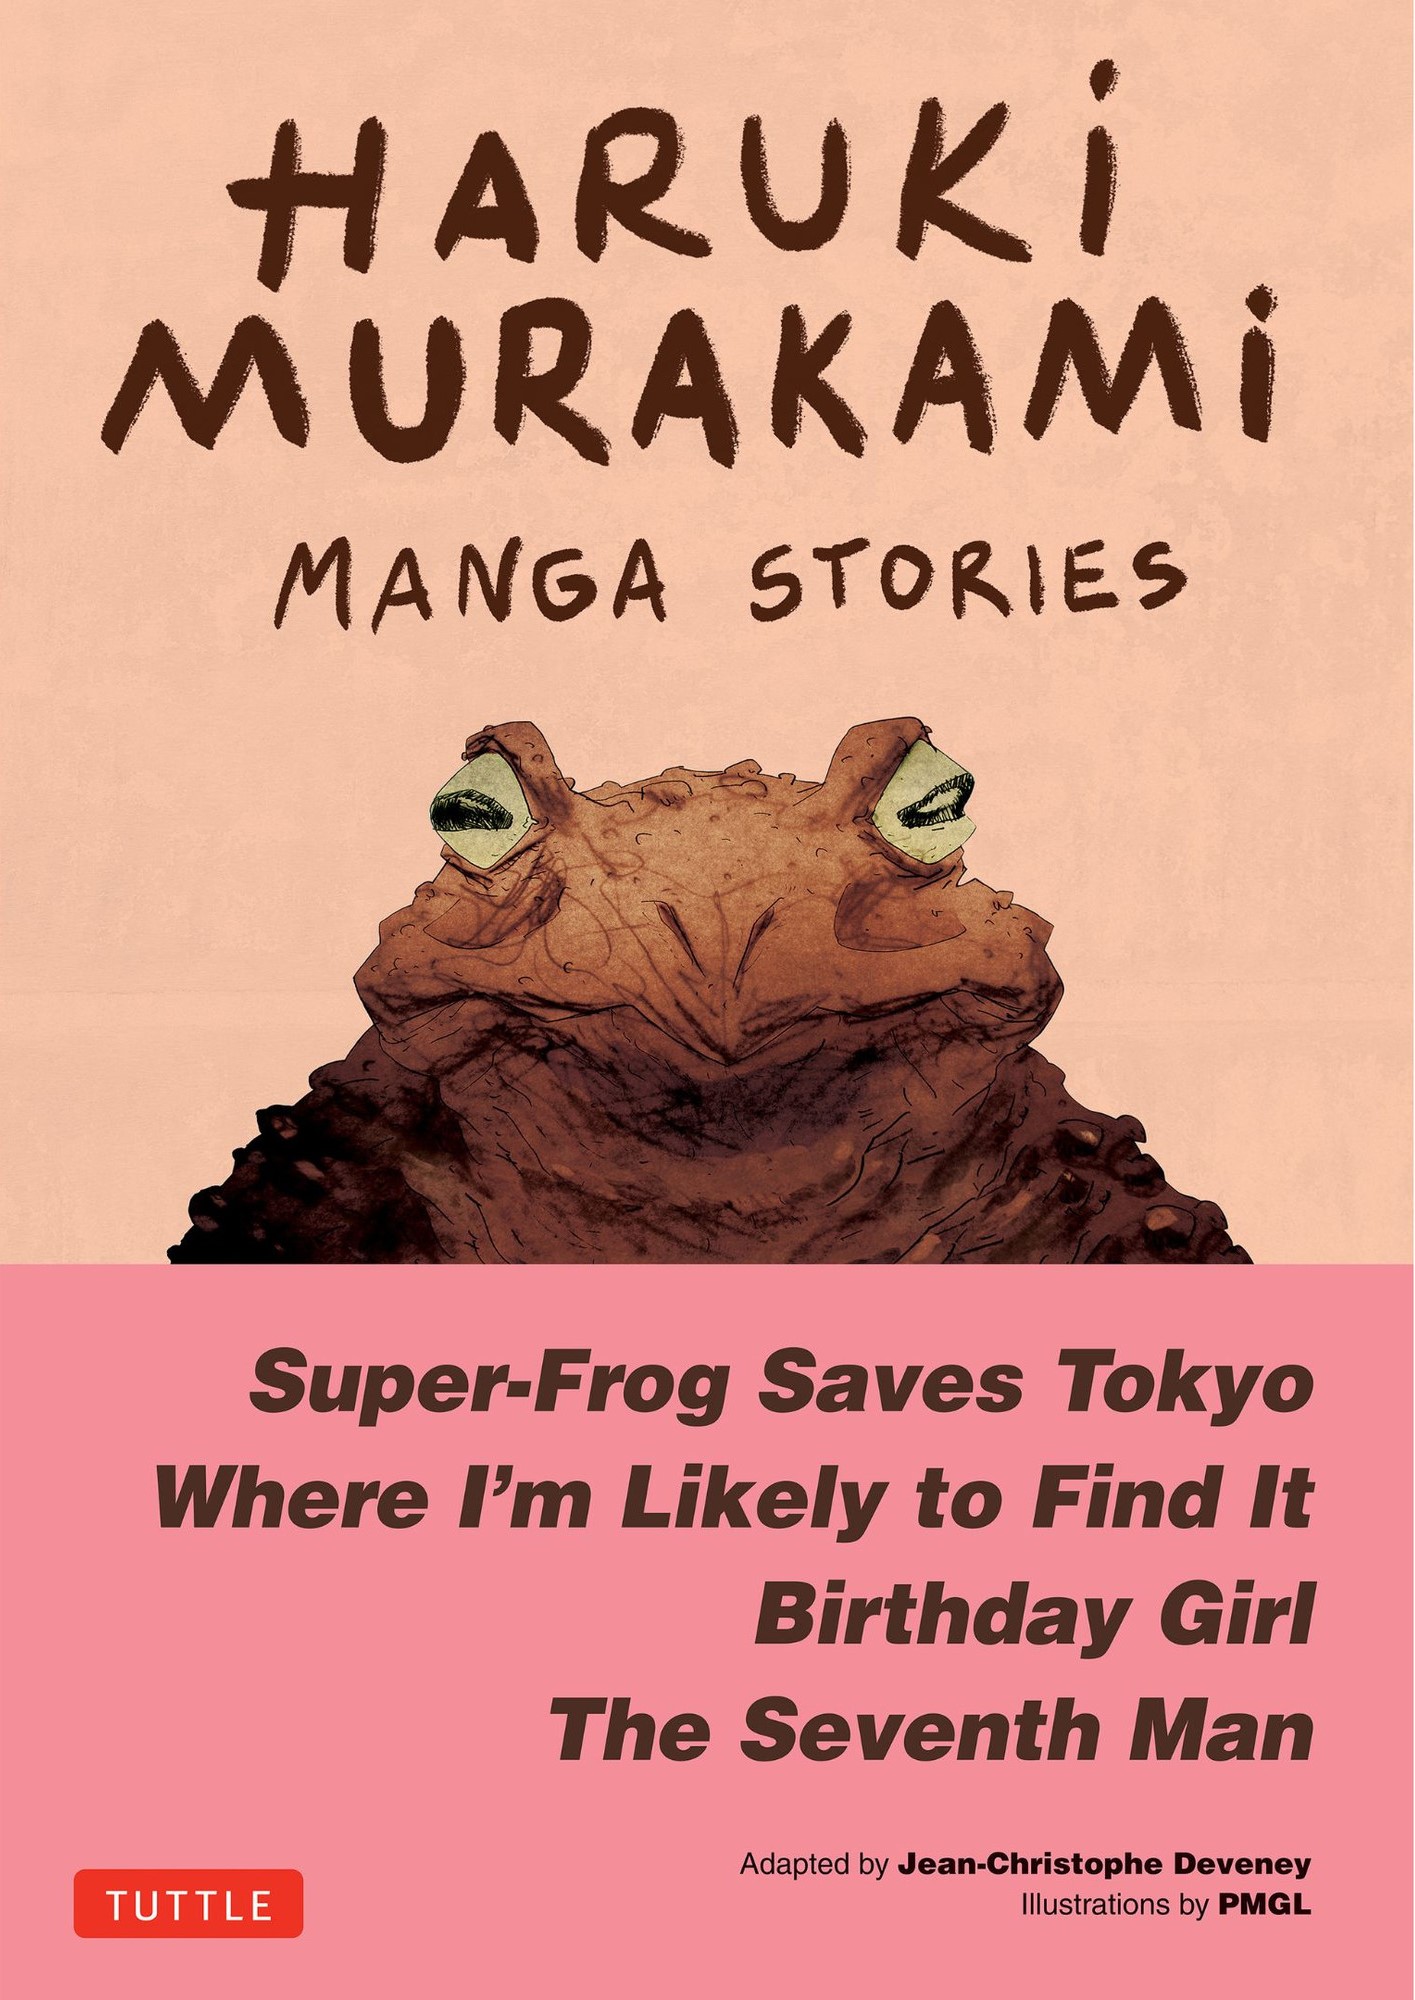 Haruki Murakami Manga Storiesの商品画像